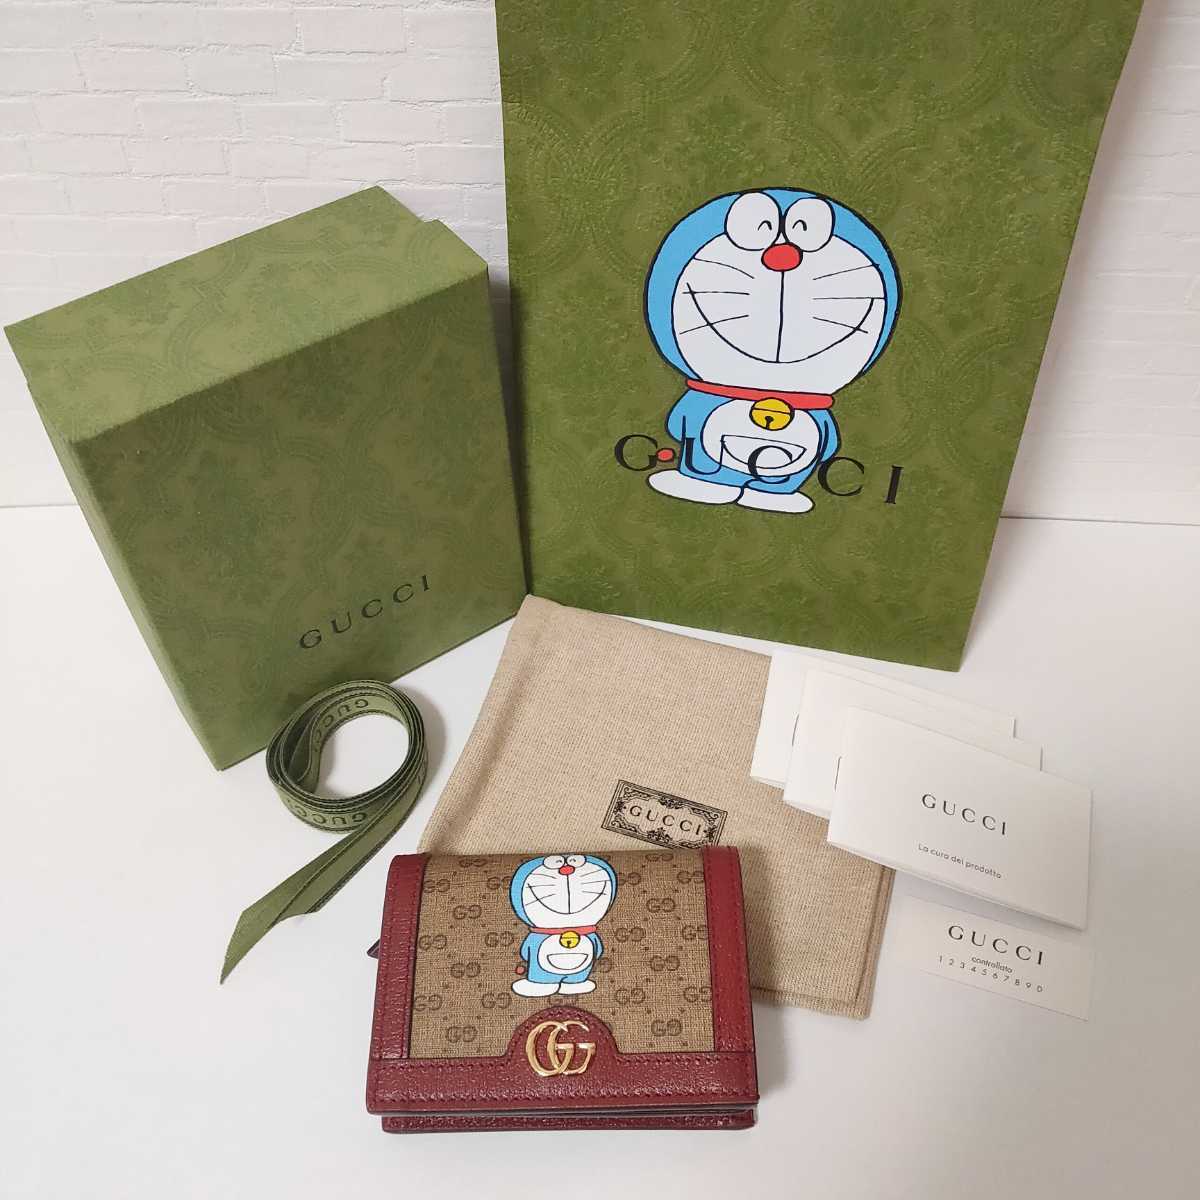 【国内正規品】新品 完売品 ドラえもん GUCCI 財布 ウォレット / ミニ財布 折り財布 カードケース グッチ コラボ 限定 Doraemon